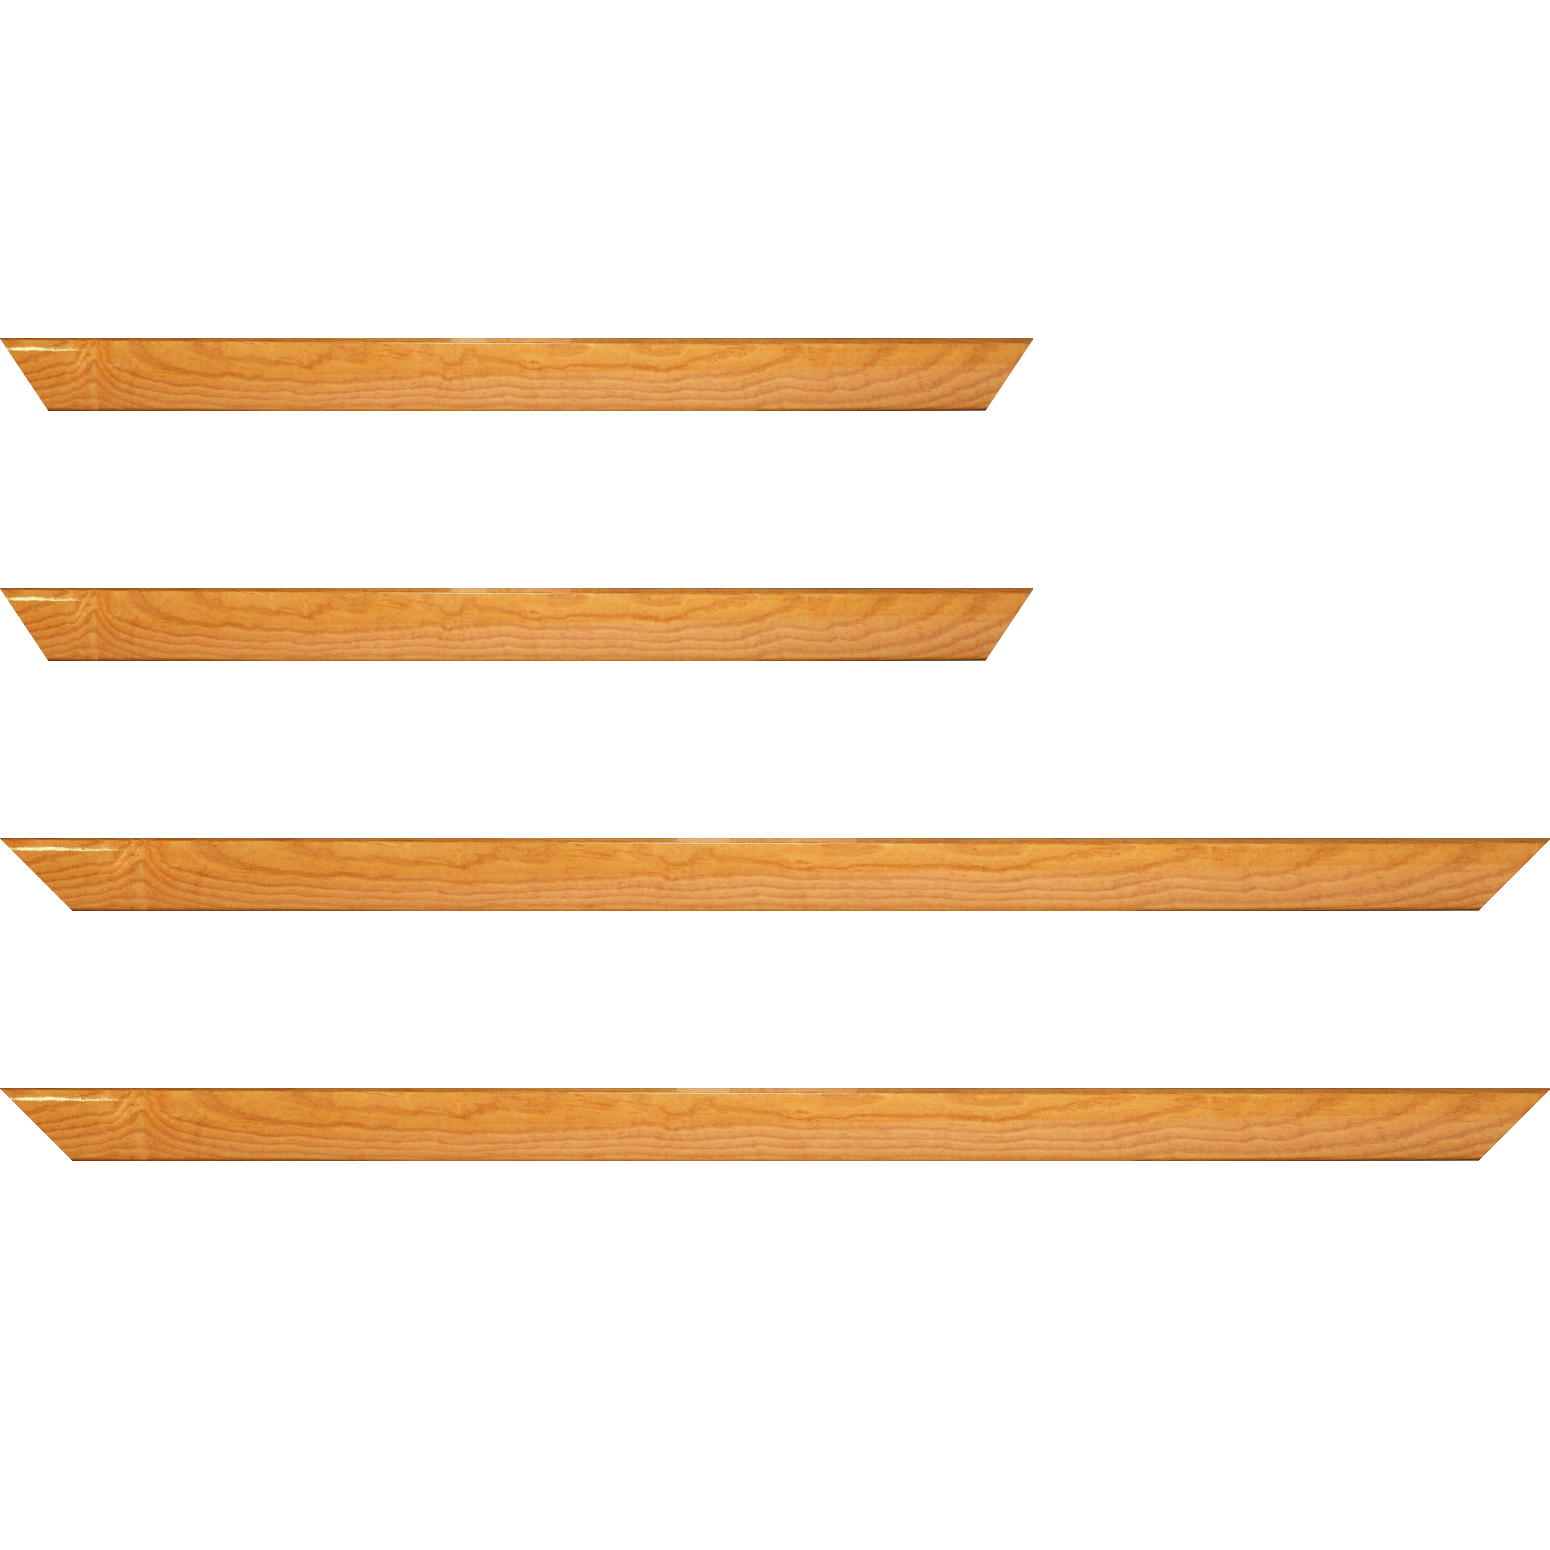 Baguette bois profil arrondi en pente plongeant largeur 2.4cm couleur jaune moutarde finition vernis brillant,veine du bois  apparent (pin) , - 70x100